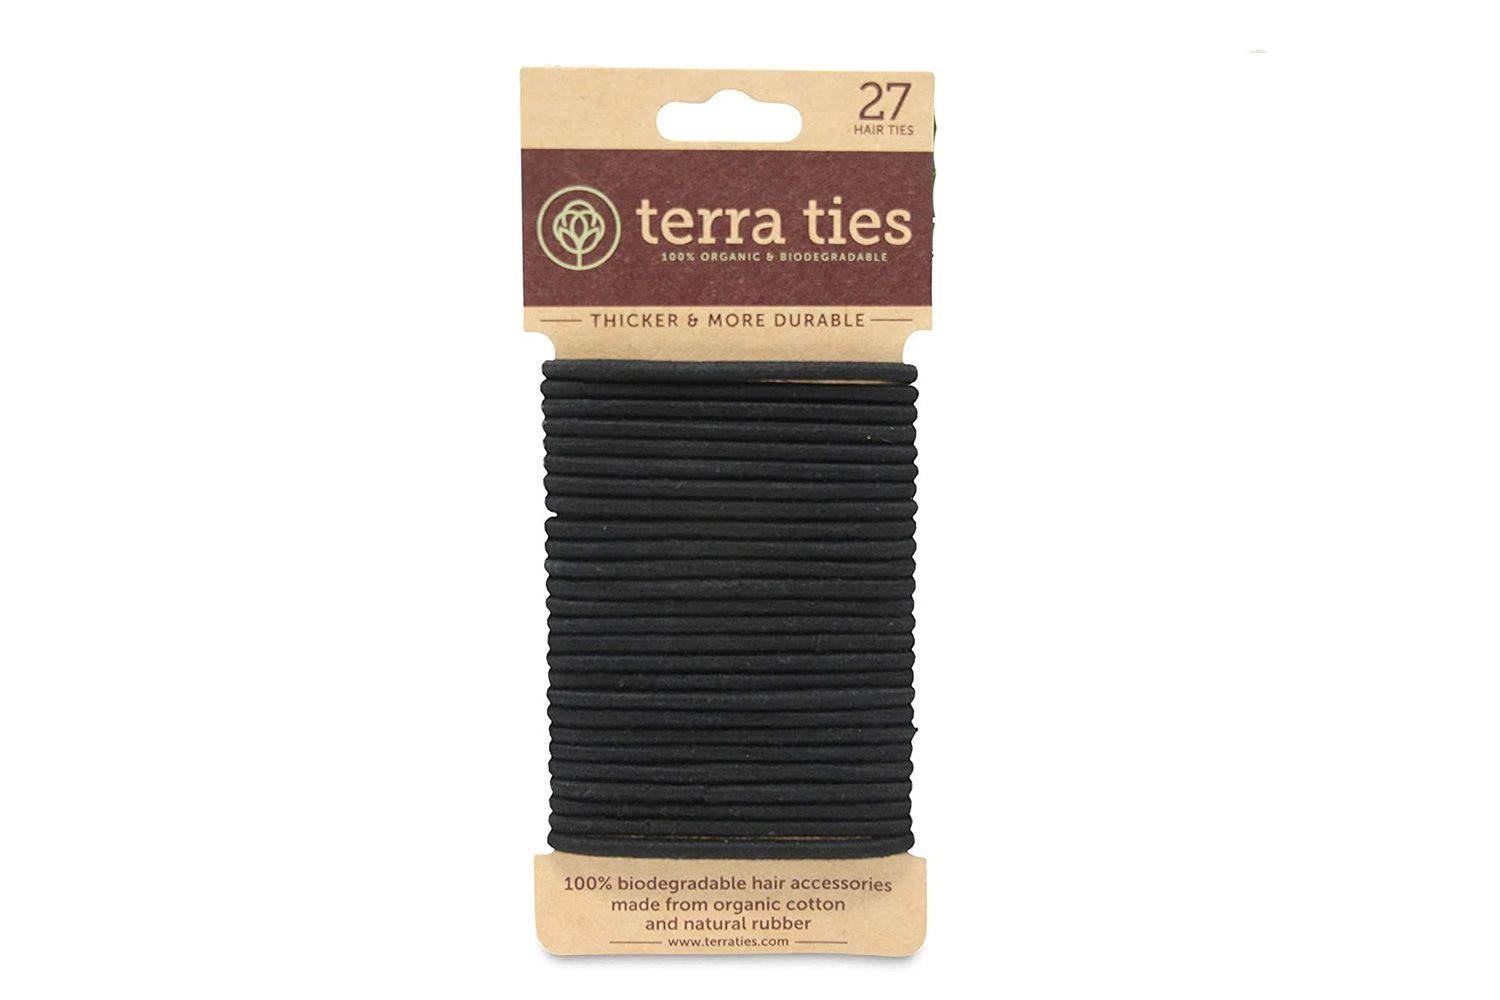 Terra Ties Compostable Hair Ties